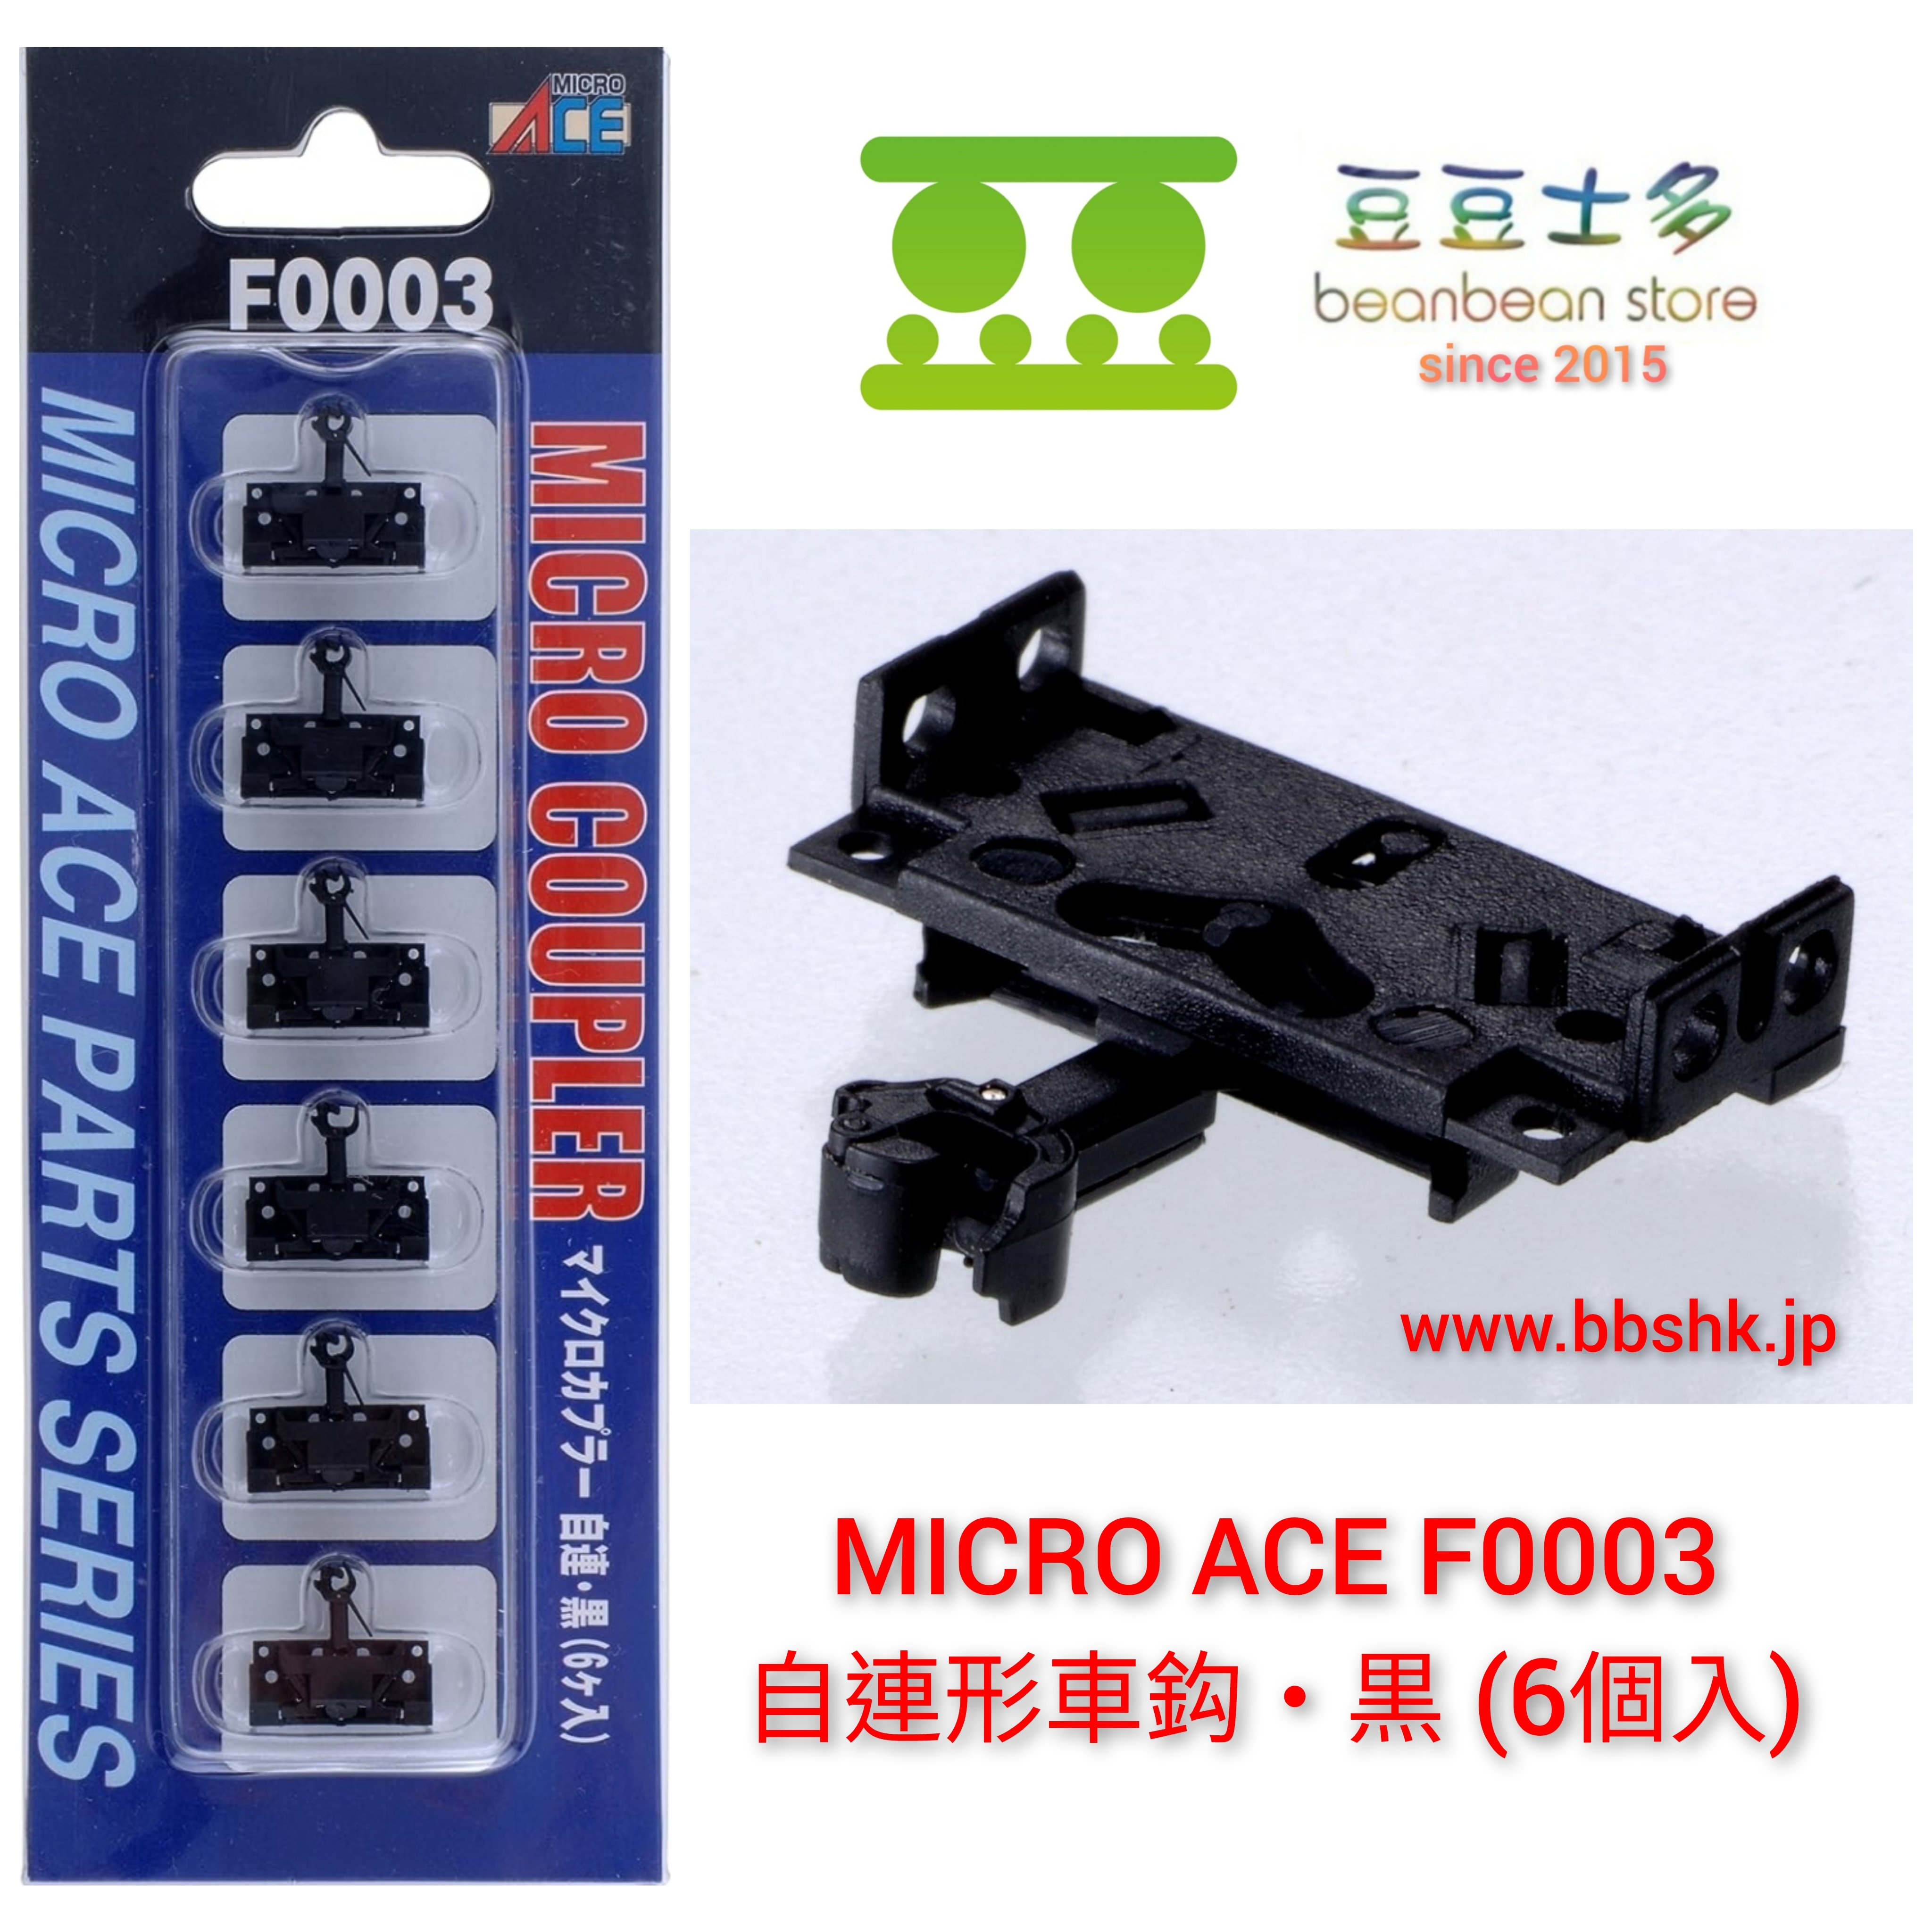 MICRO ACE F0003 マイクロカプラー自連・黒(6個入り)